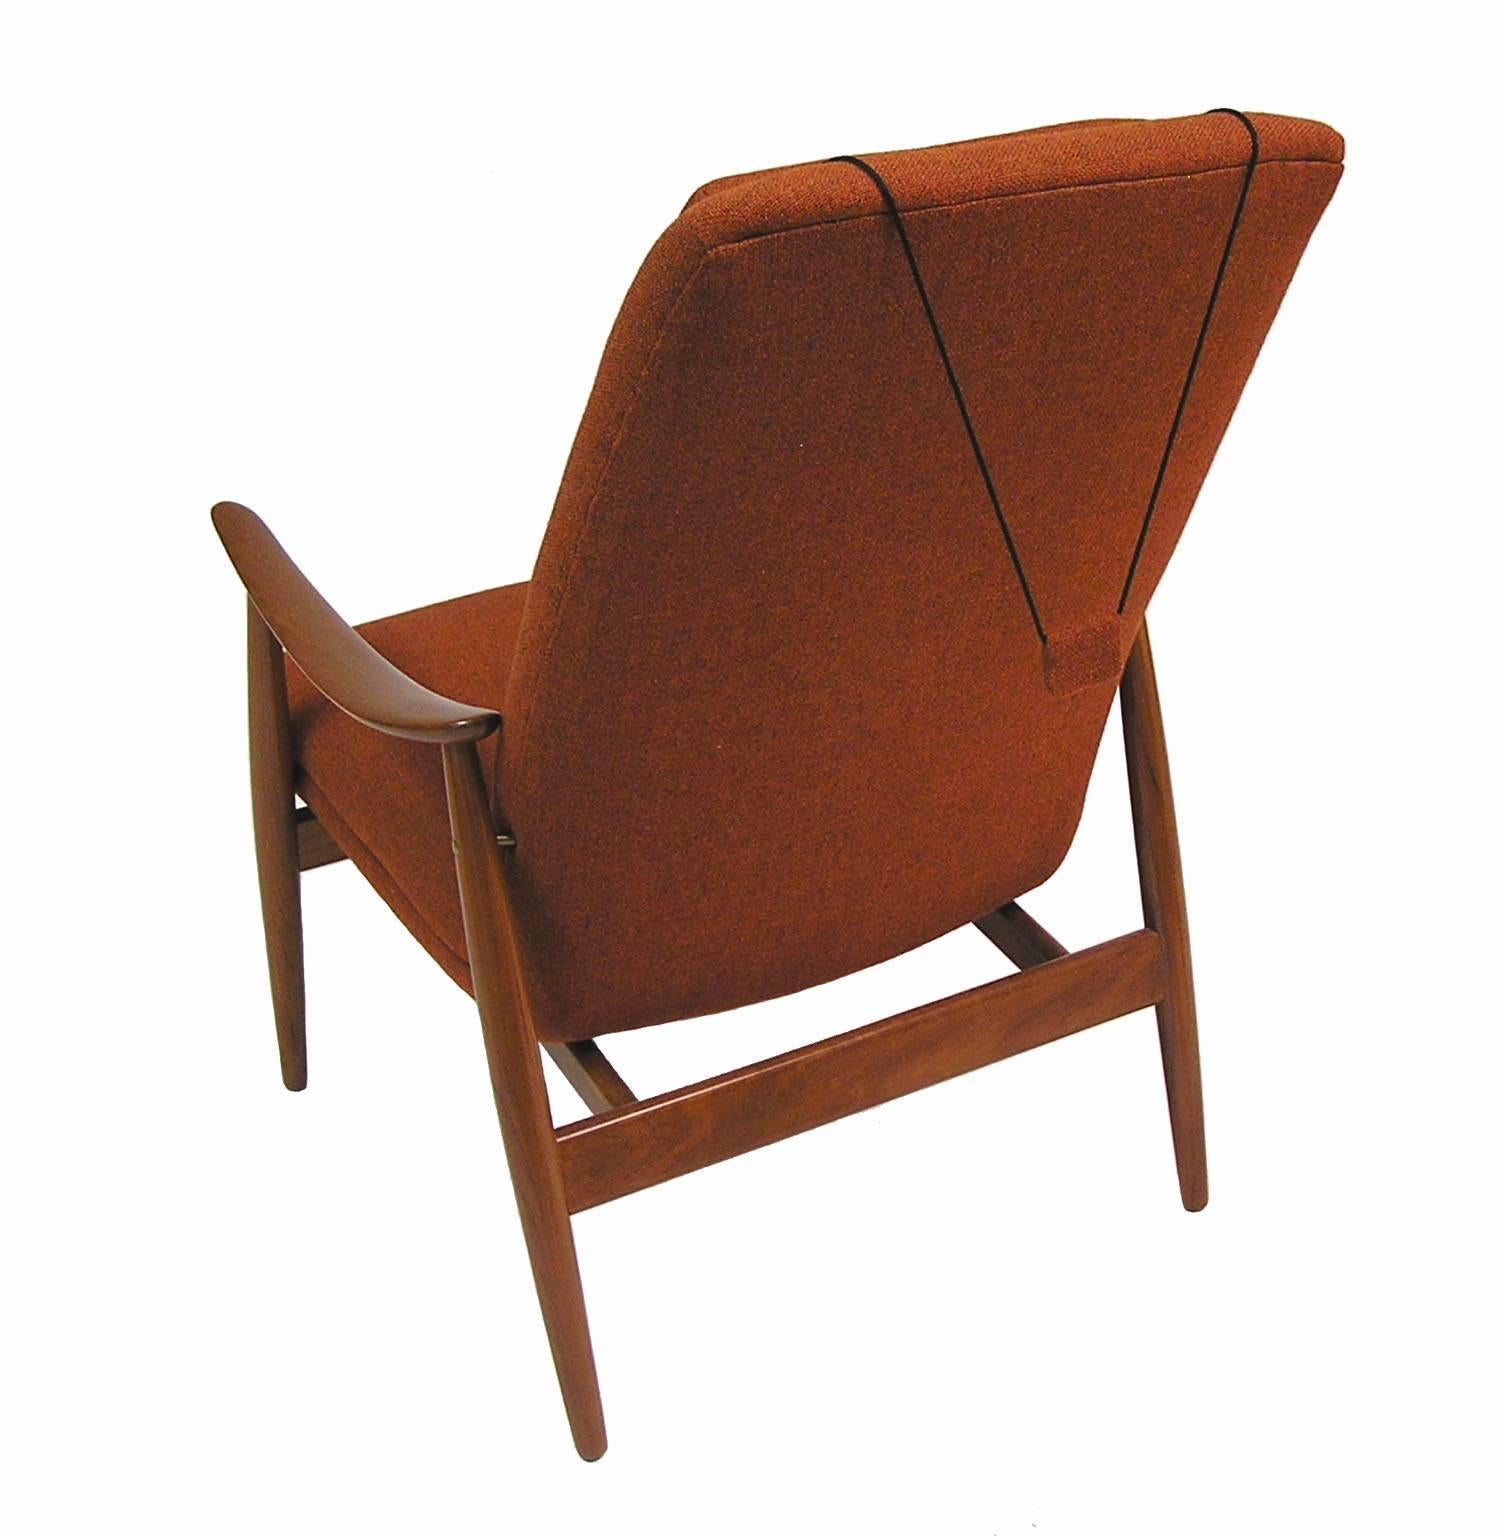 Norwegian 1960s Teak Lounge Chair by Ingmar Relling for Westnofa